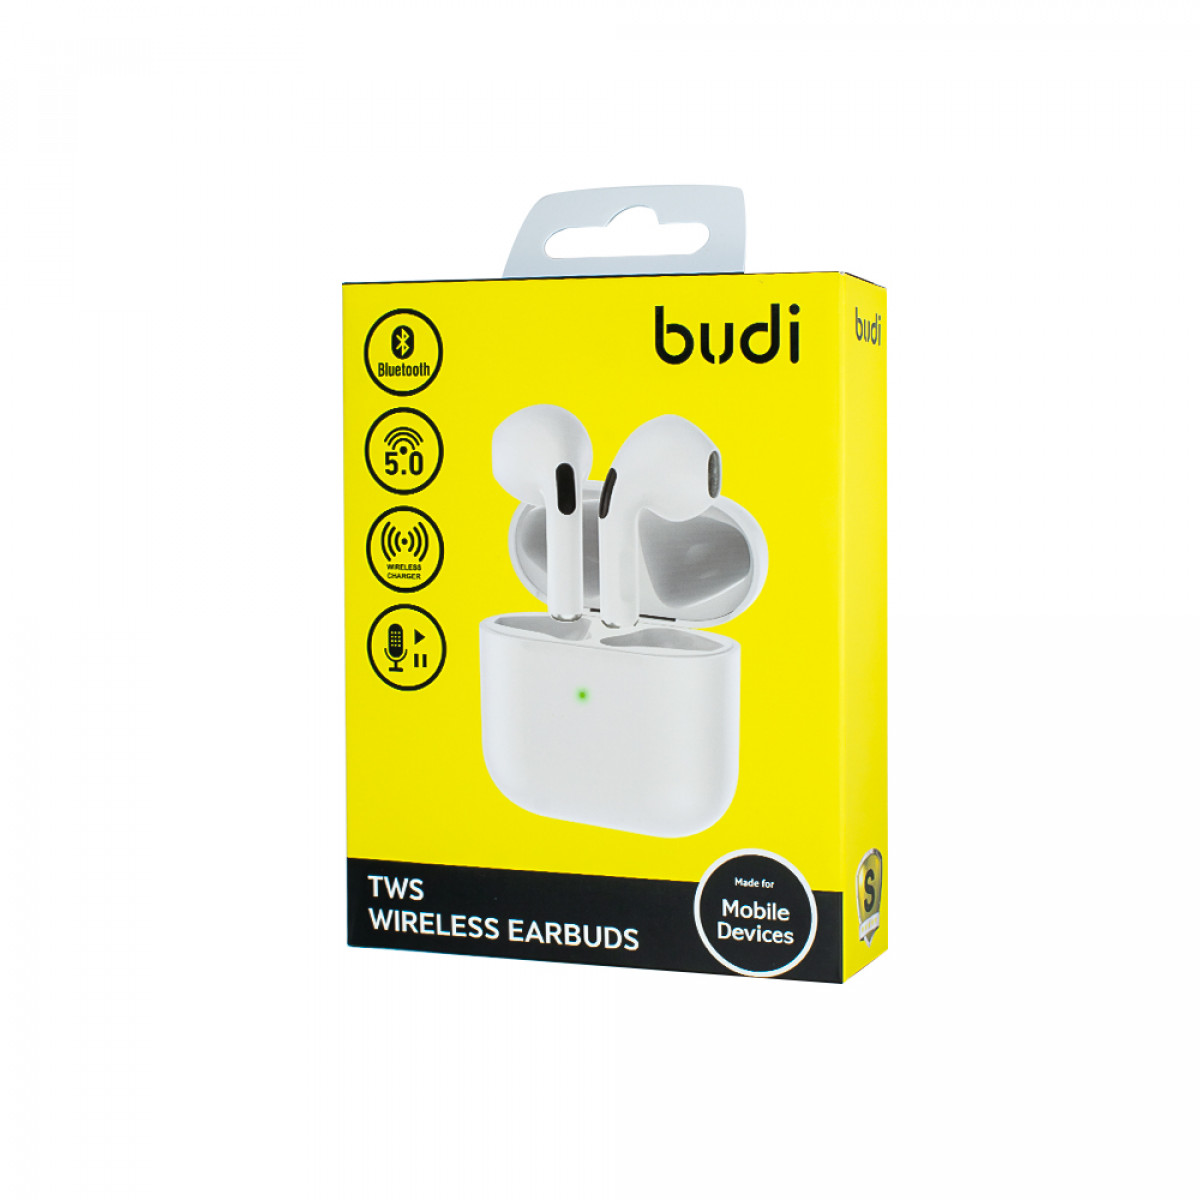 EP13W - Budi TWS Wireless Earbuds 5.0